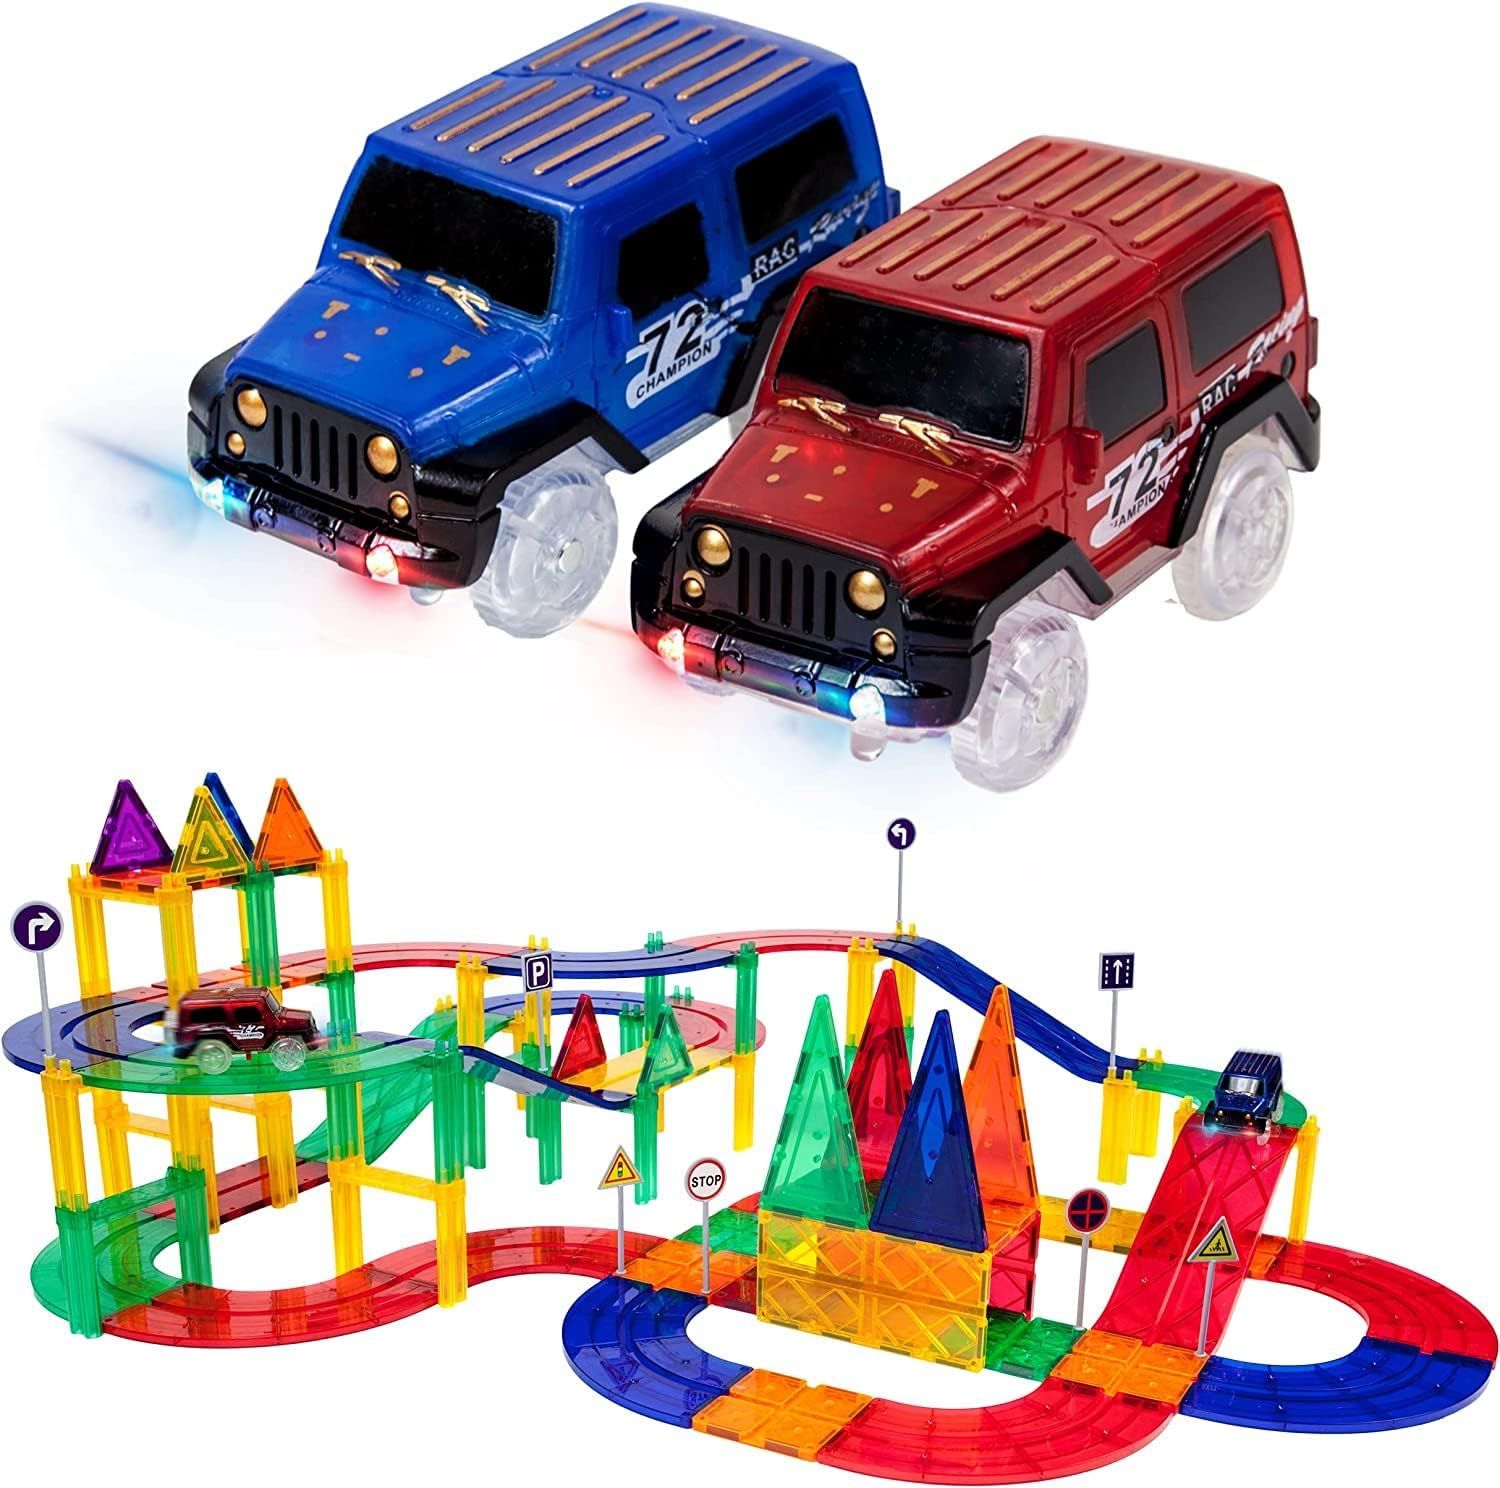 PicassoTiles 80 Piece Race Car Track Building Block Educational Toy Set Magnetic Tiles Magnet DIY... | Amazon (US)